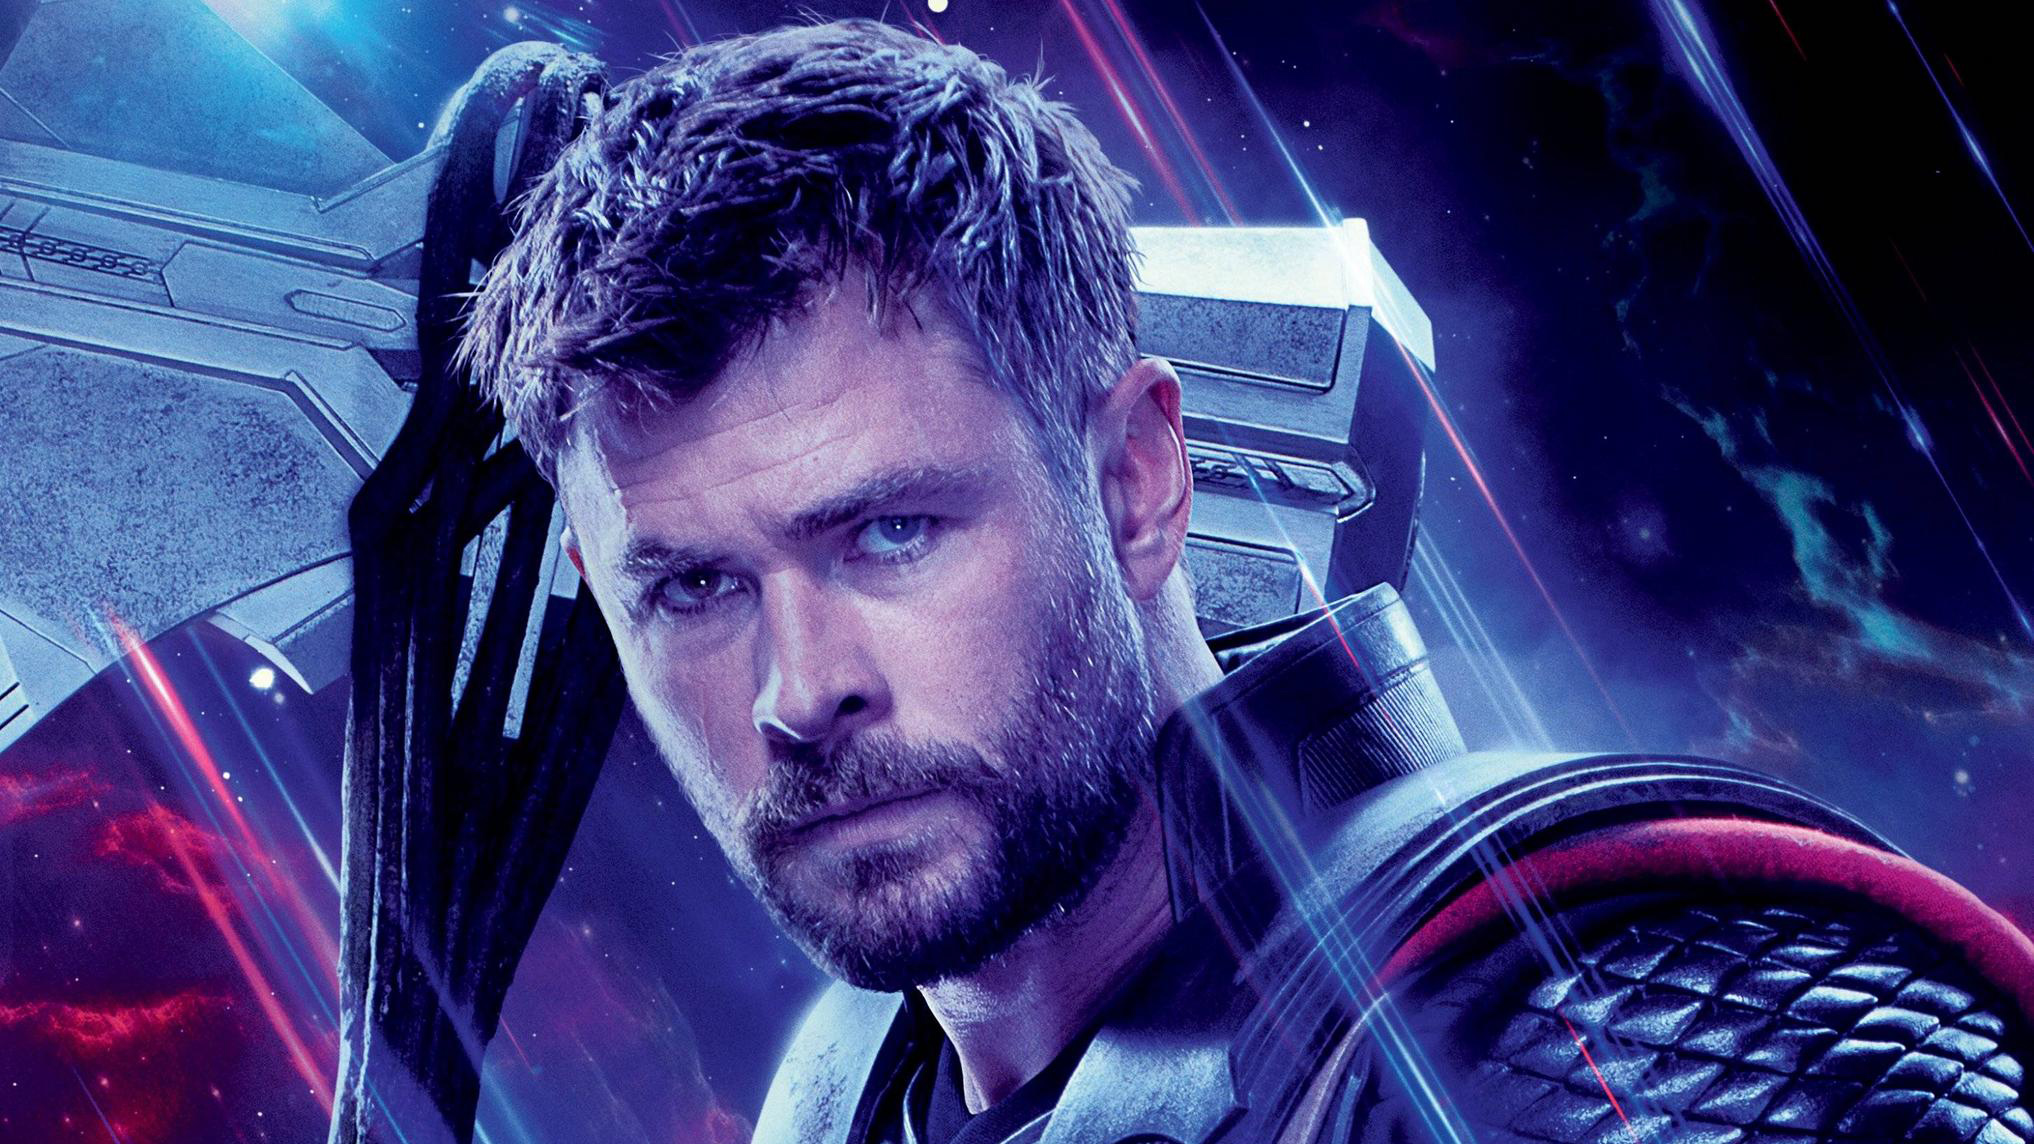 Download mobile wallpaper Movie, Thor, The Avengers, Chris Hemsworth, Avengers Endgame for free.